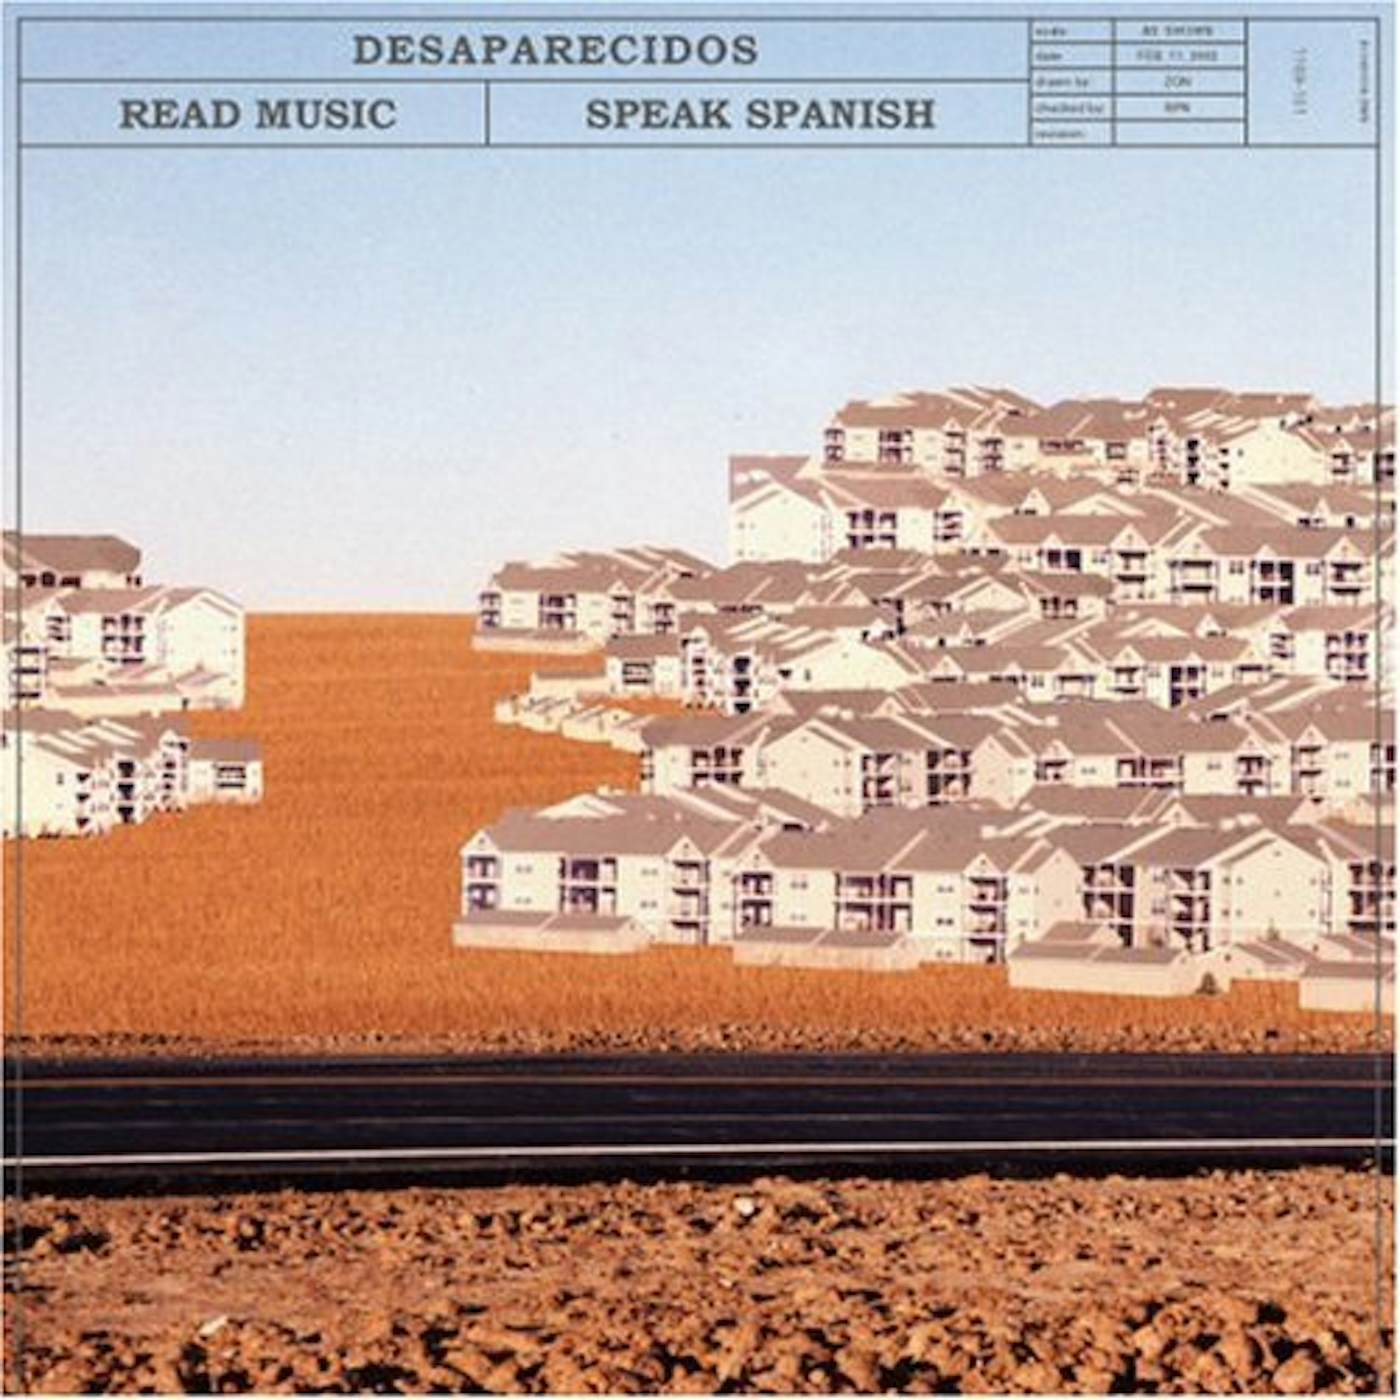 Desaparecidos READ MUSIC: SPEAK SPANISH CD